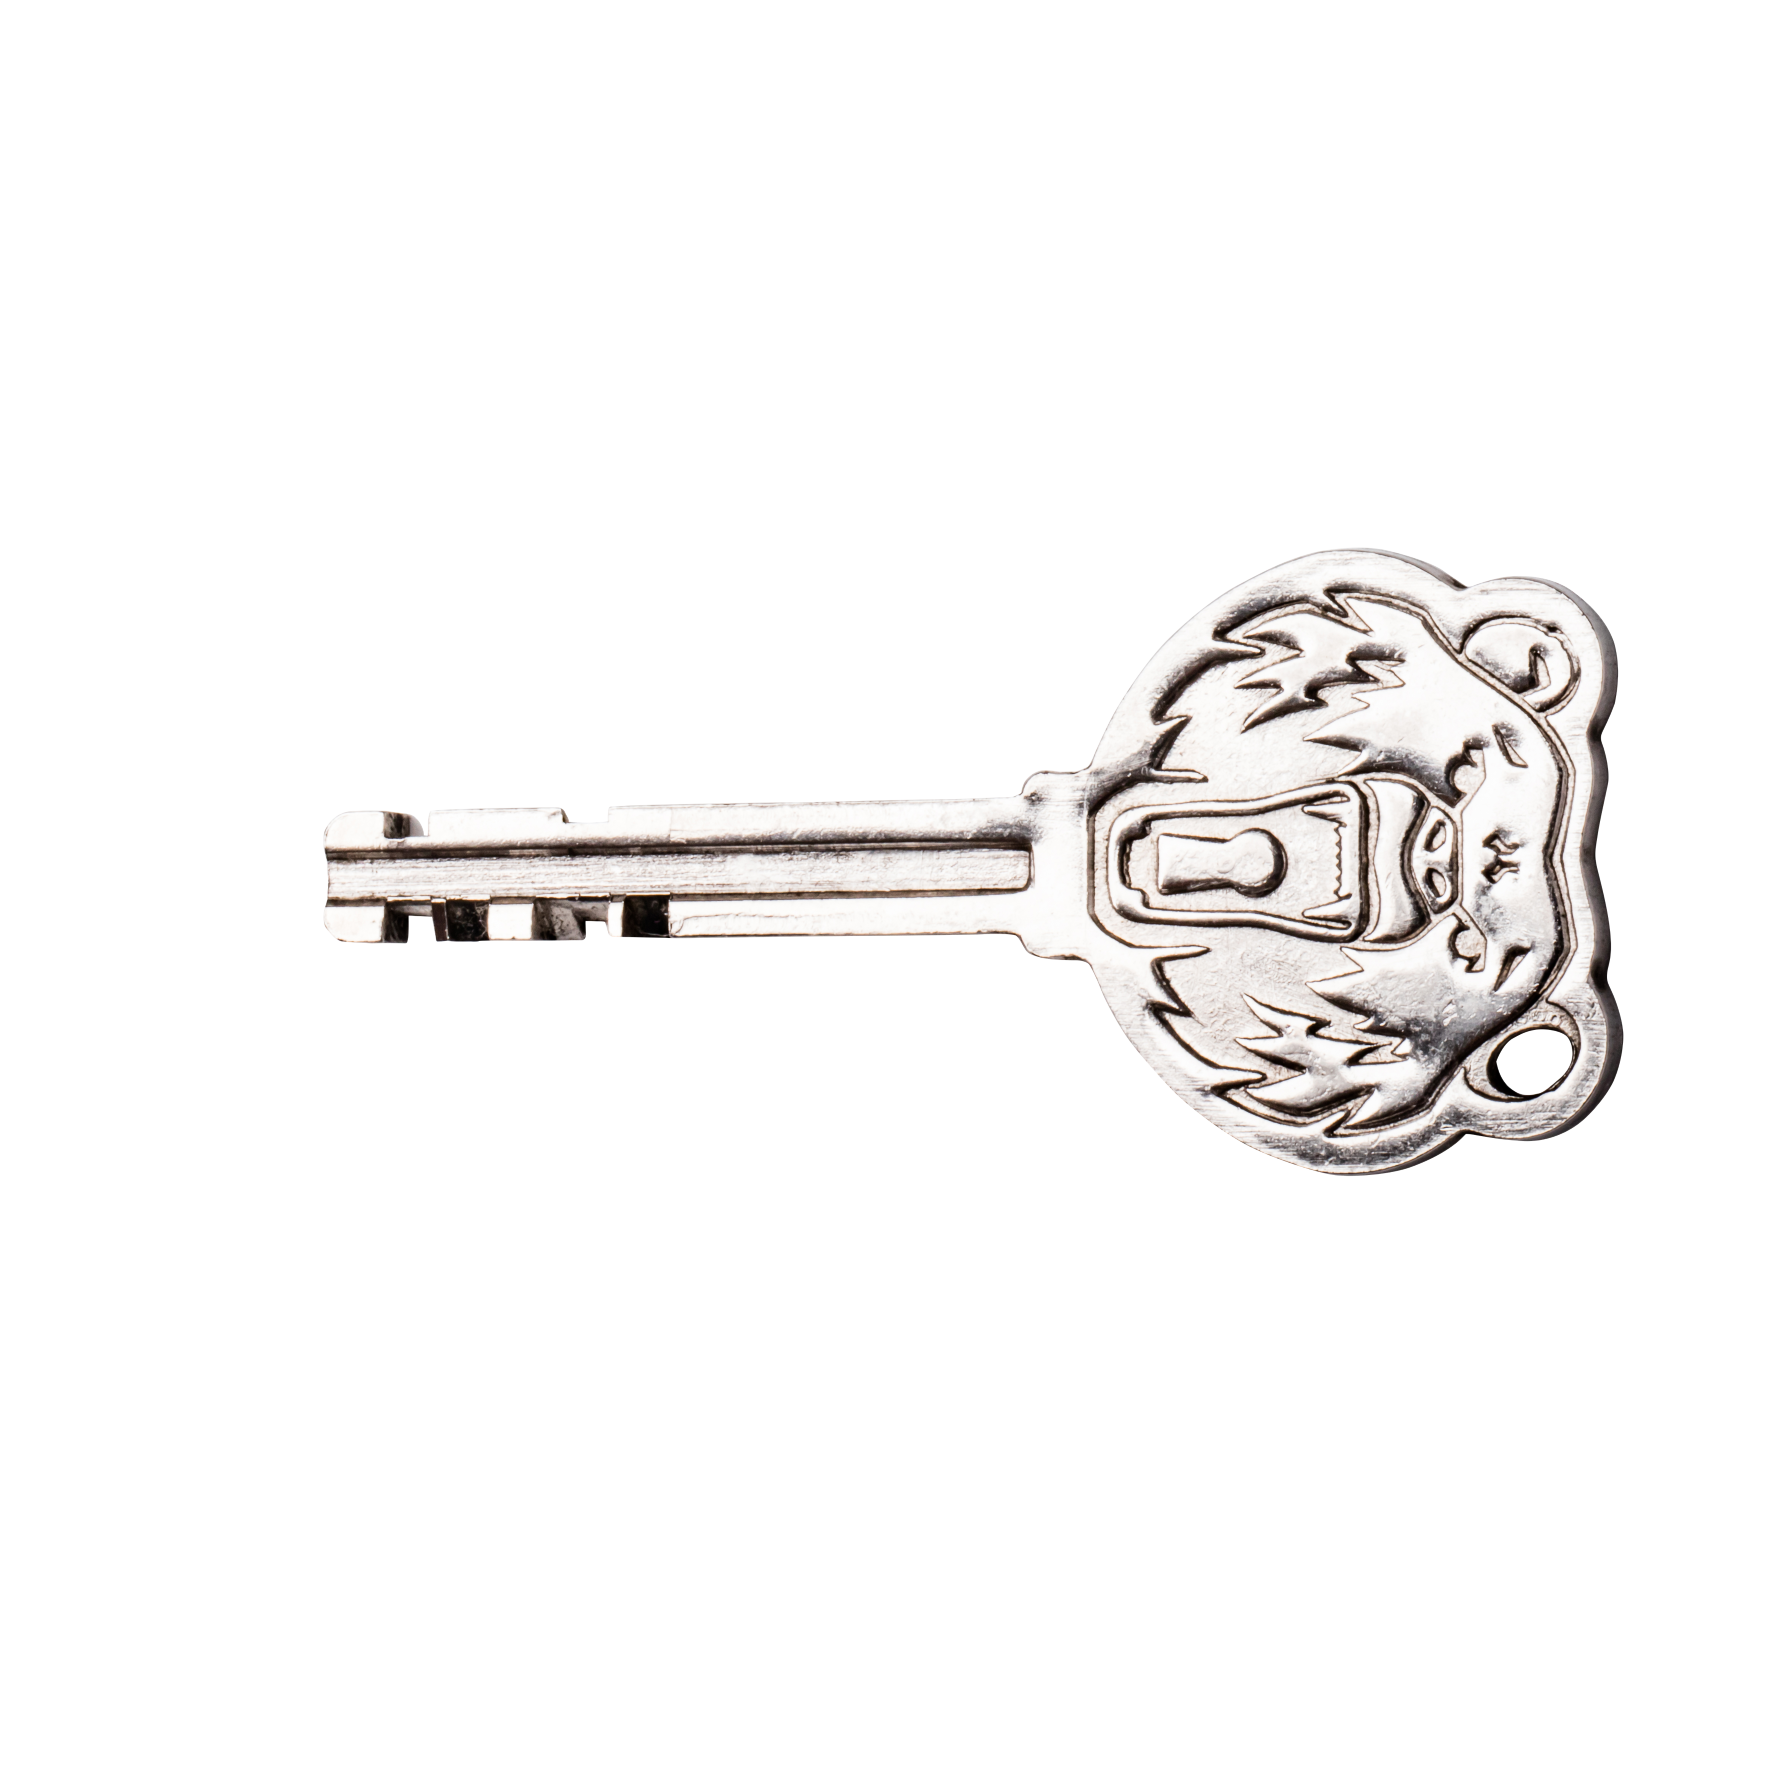 Powerlock Stainless Steel keys